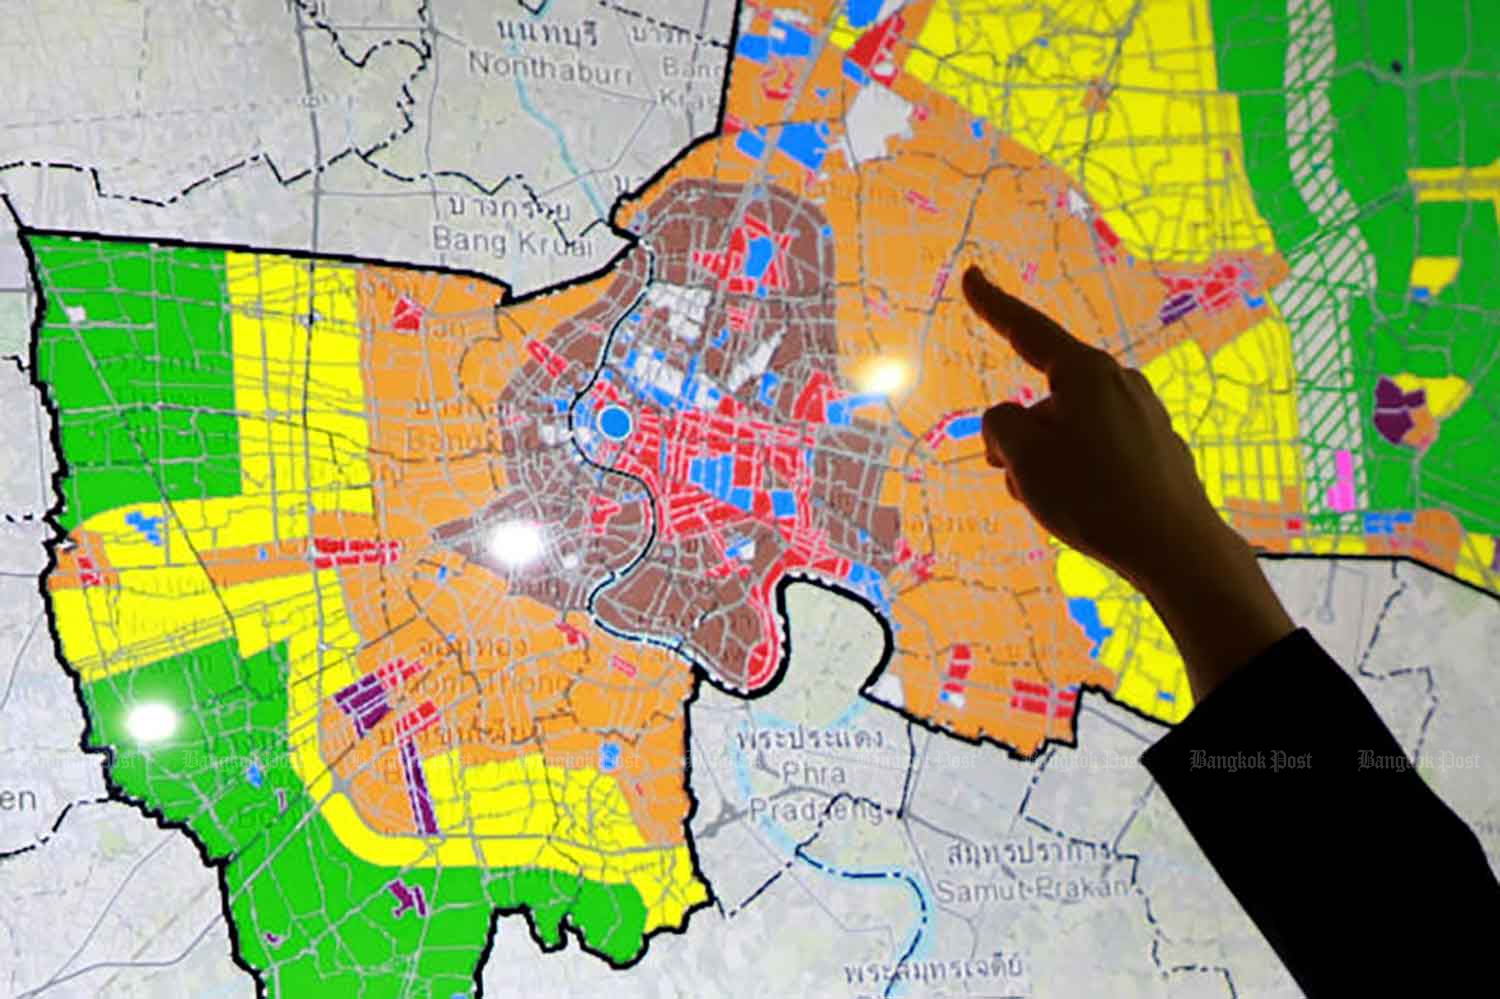 Bangkok governor responds to city plan criticism